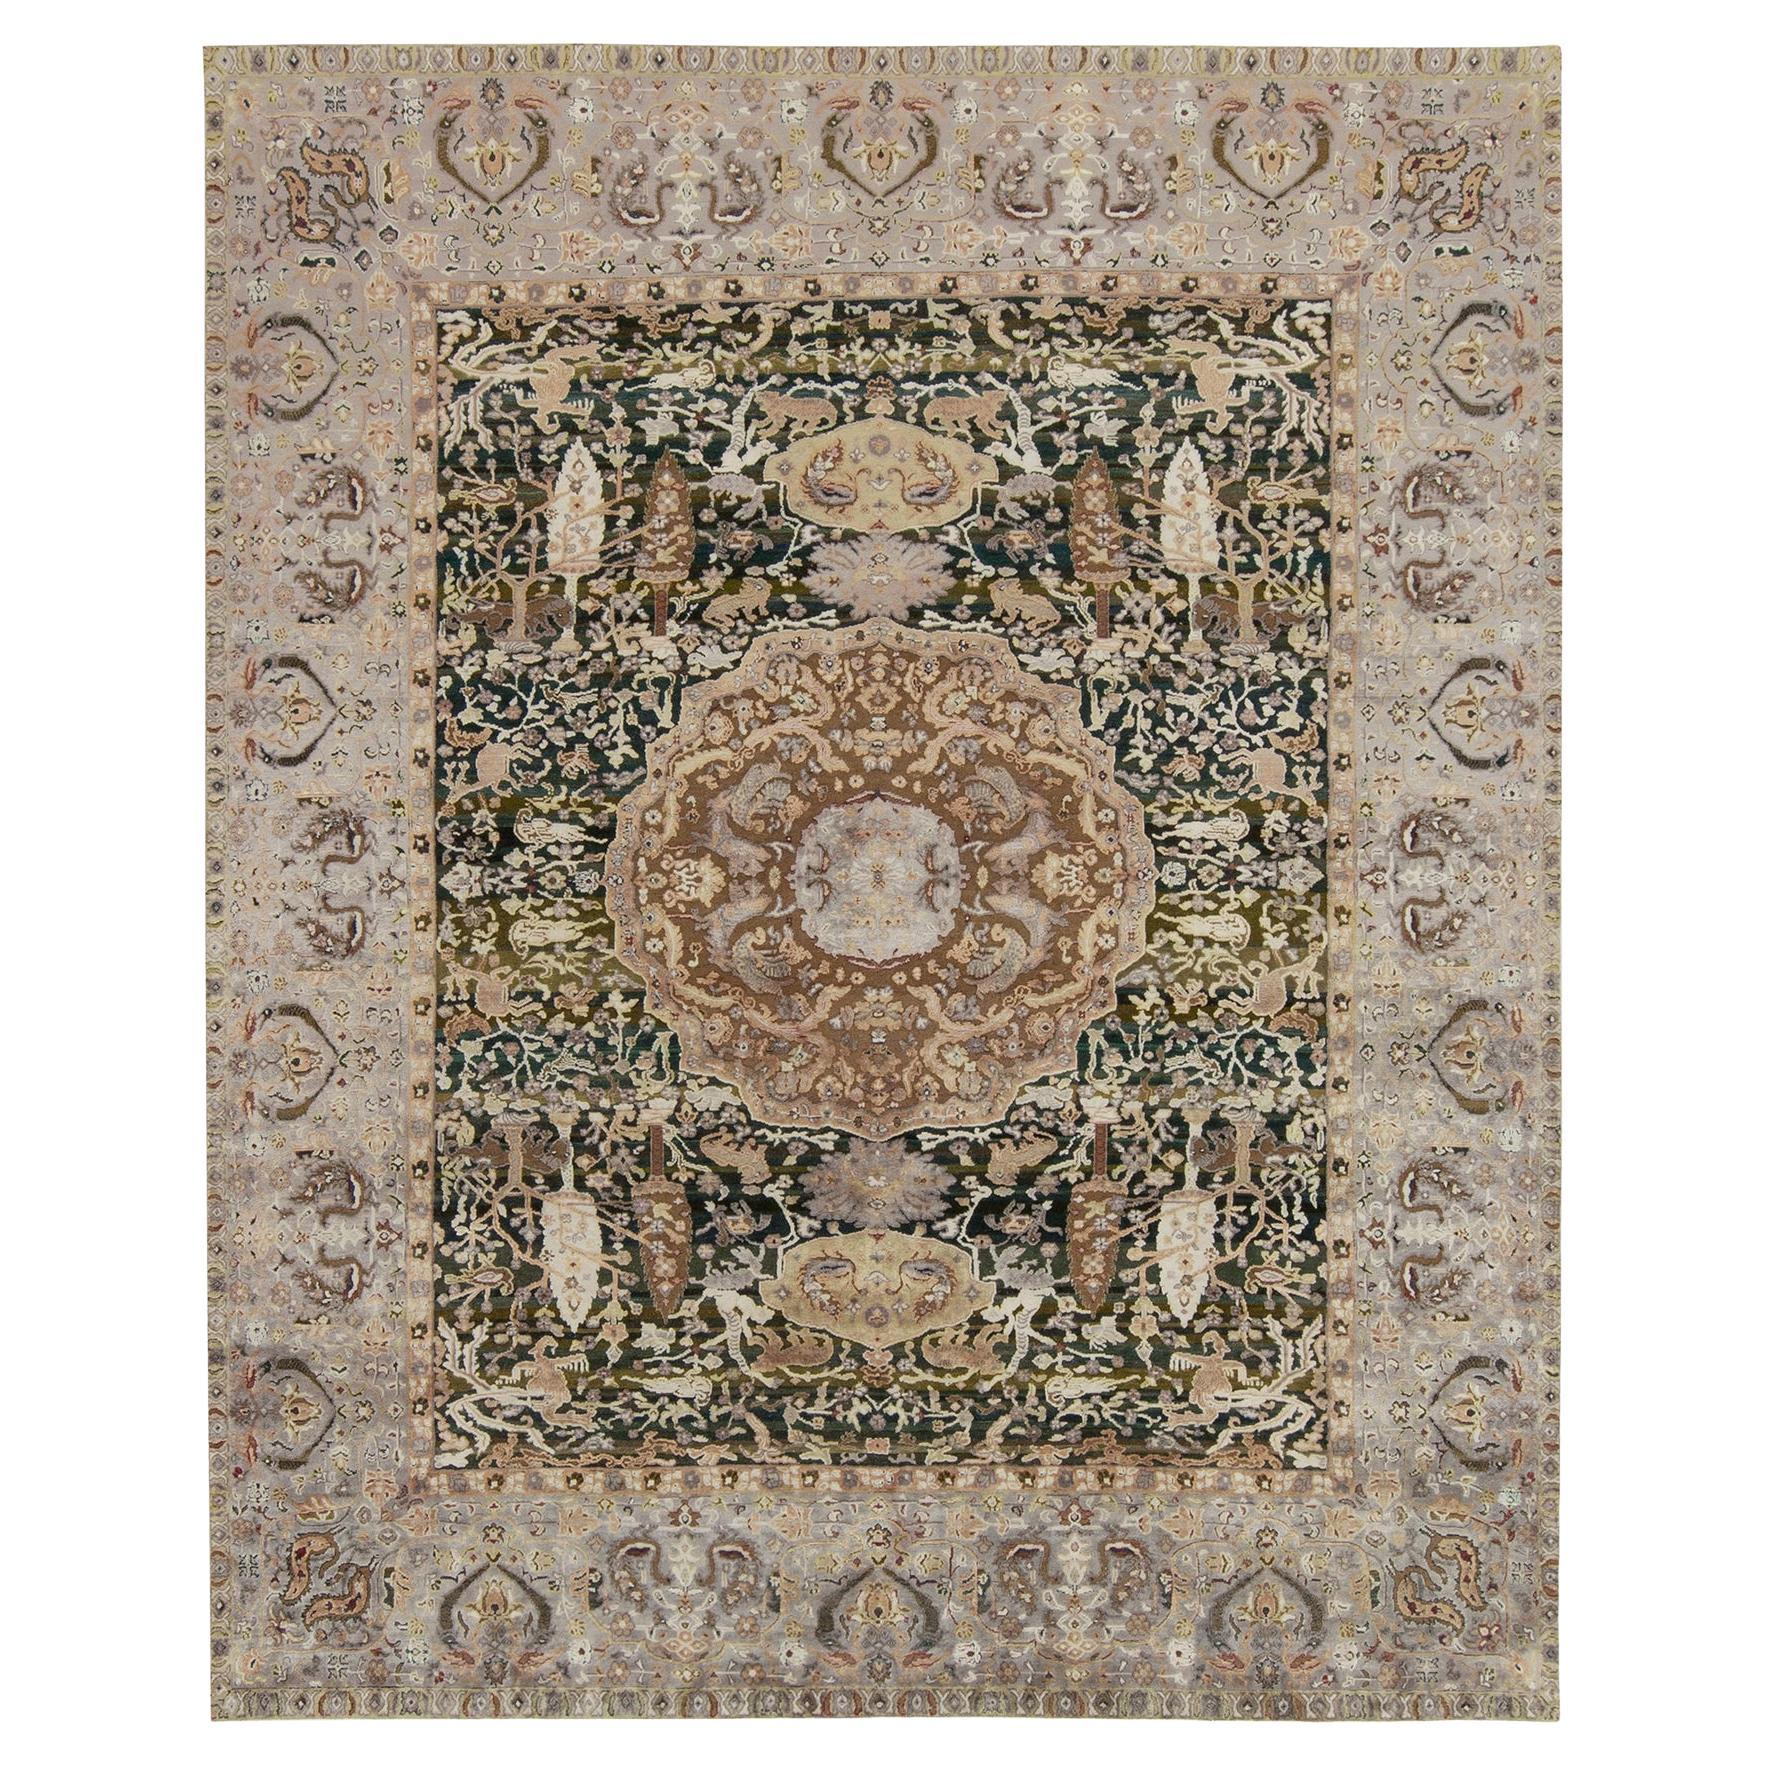 Teppich im klassischen Stil von Teppich & Kilims mit grauem und beige-braunem Blumenmuster